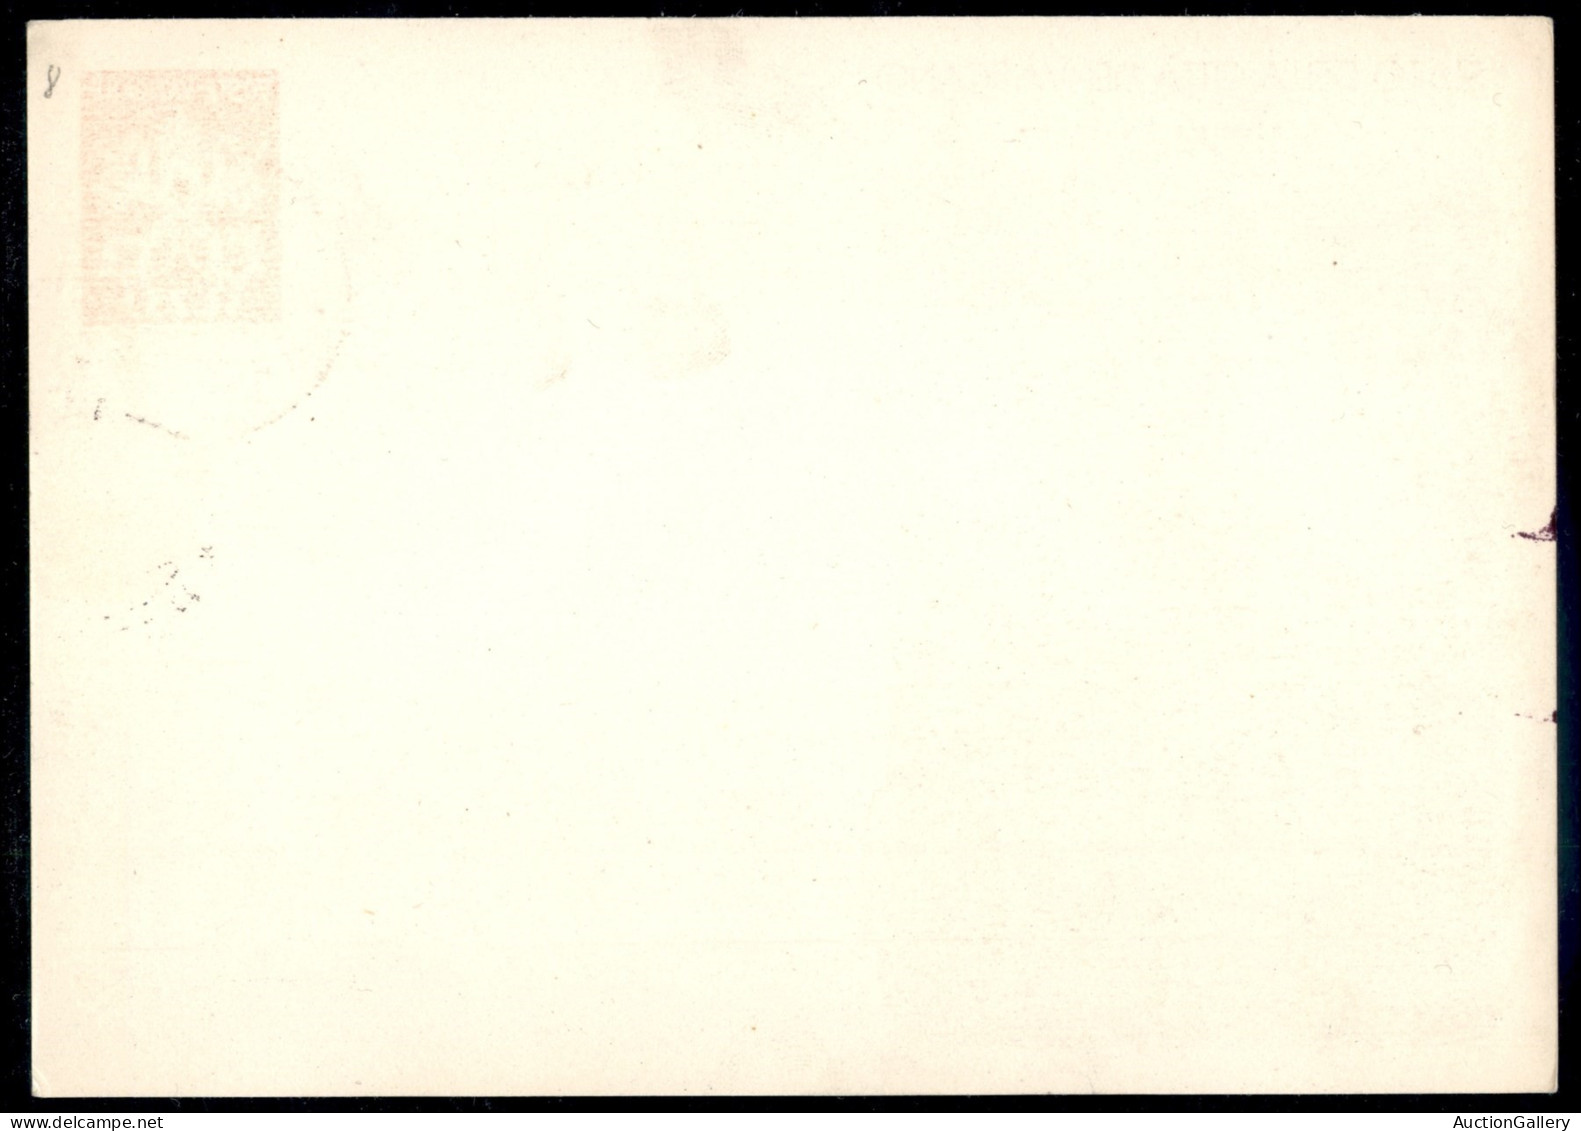 VATICANO - VATICANO - 1930 (1 marzo) - Vedute - 4 cartoline postali (8/1 + 2 - 9/1 + 2) della seconda tiratura annullate